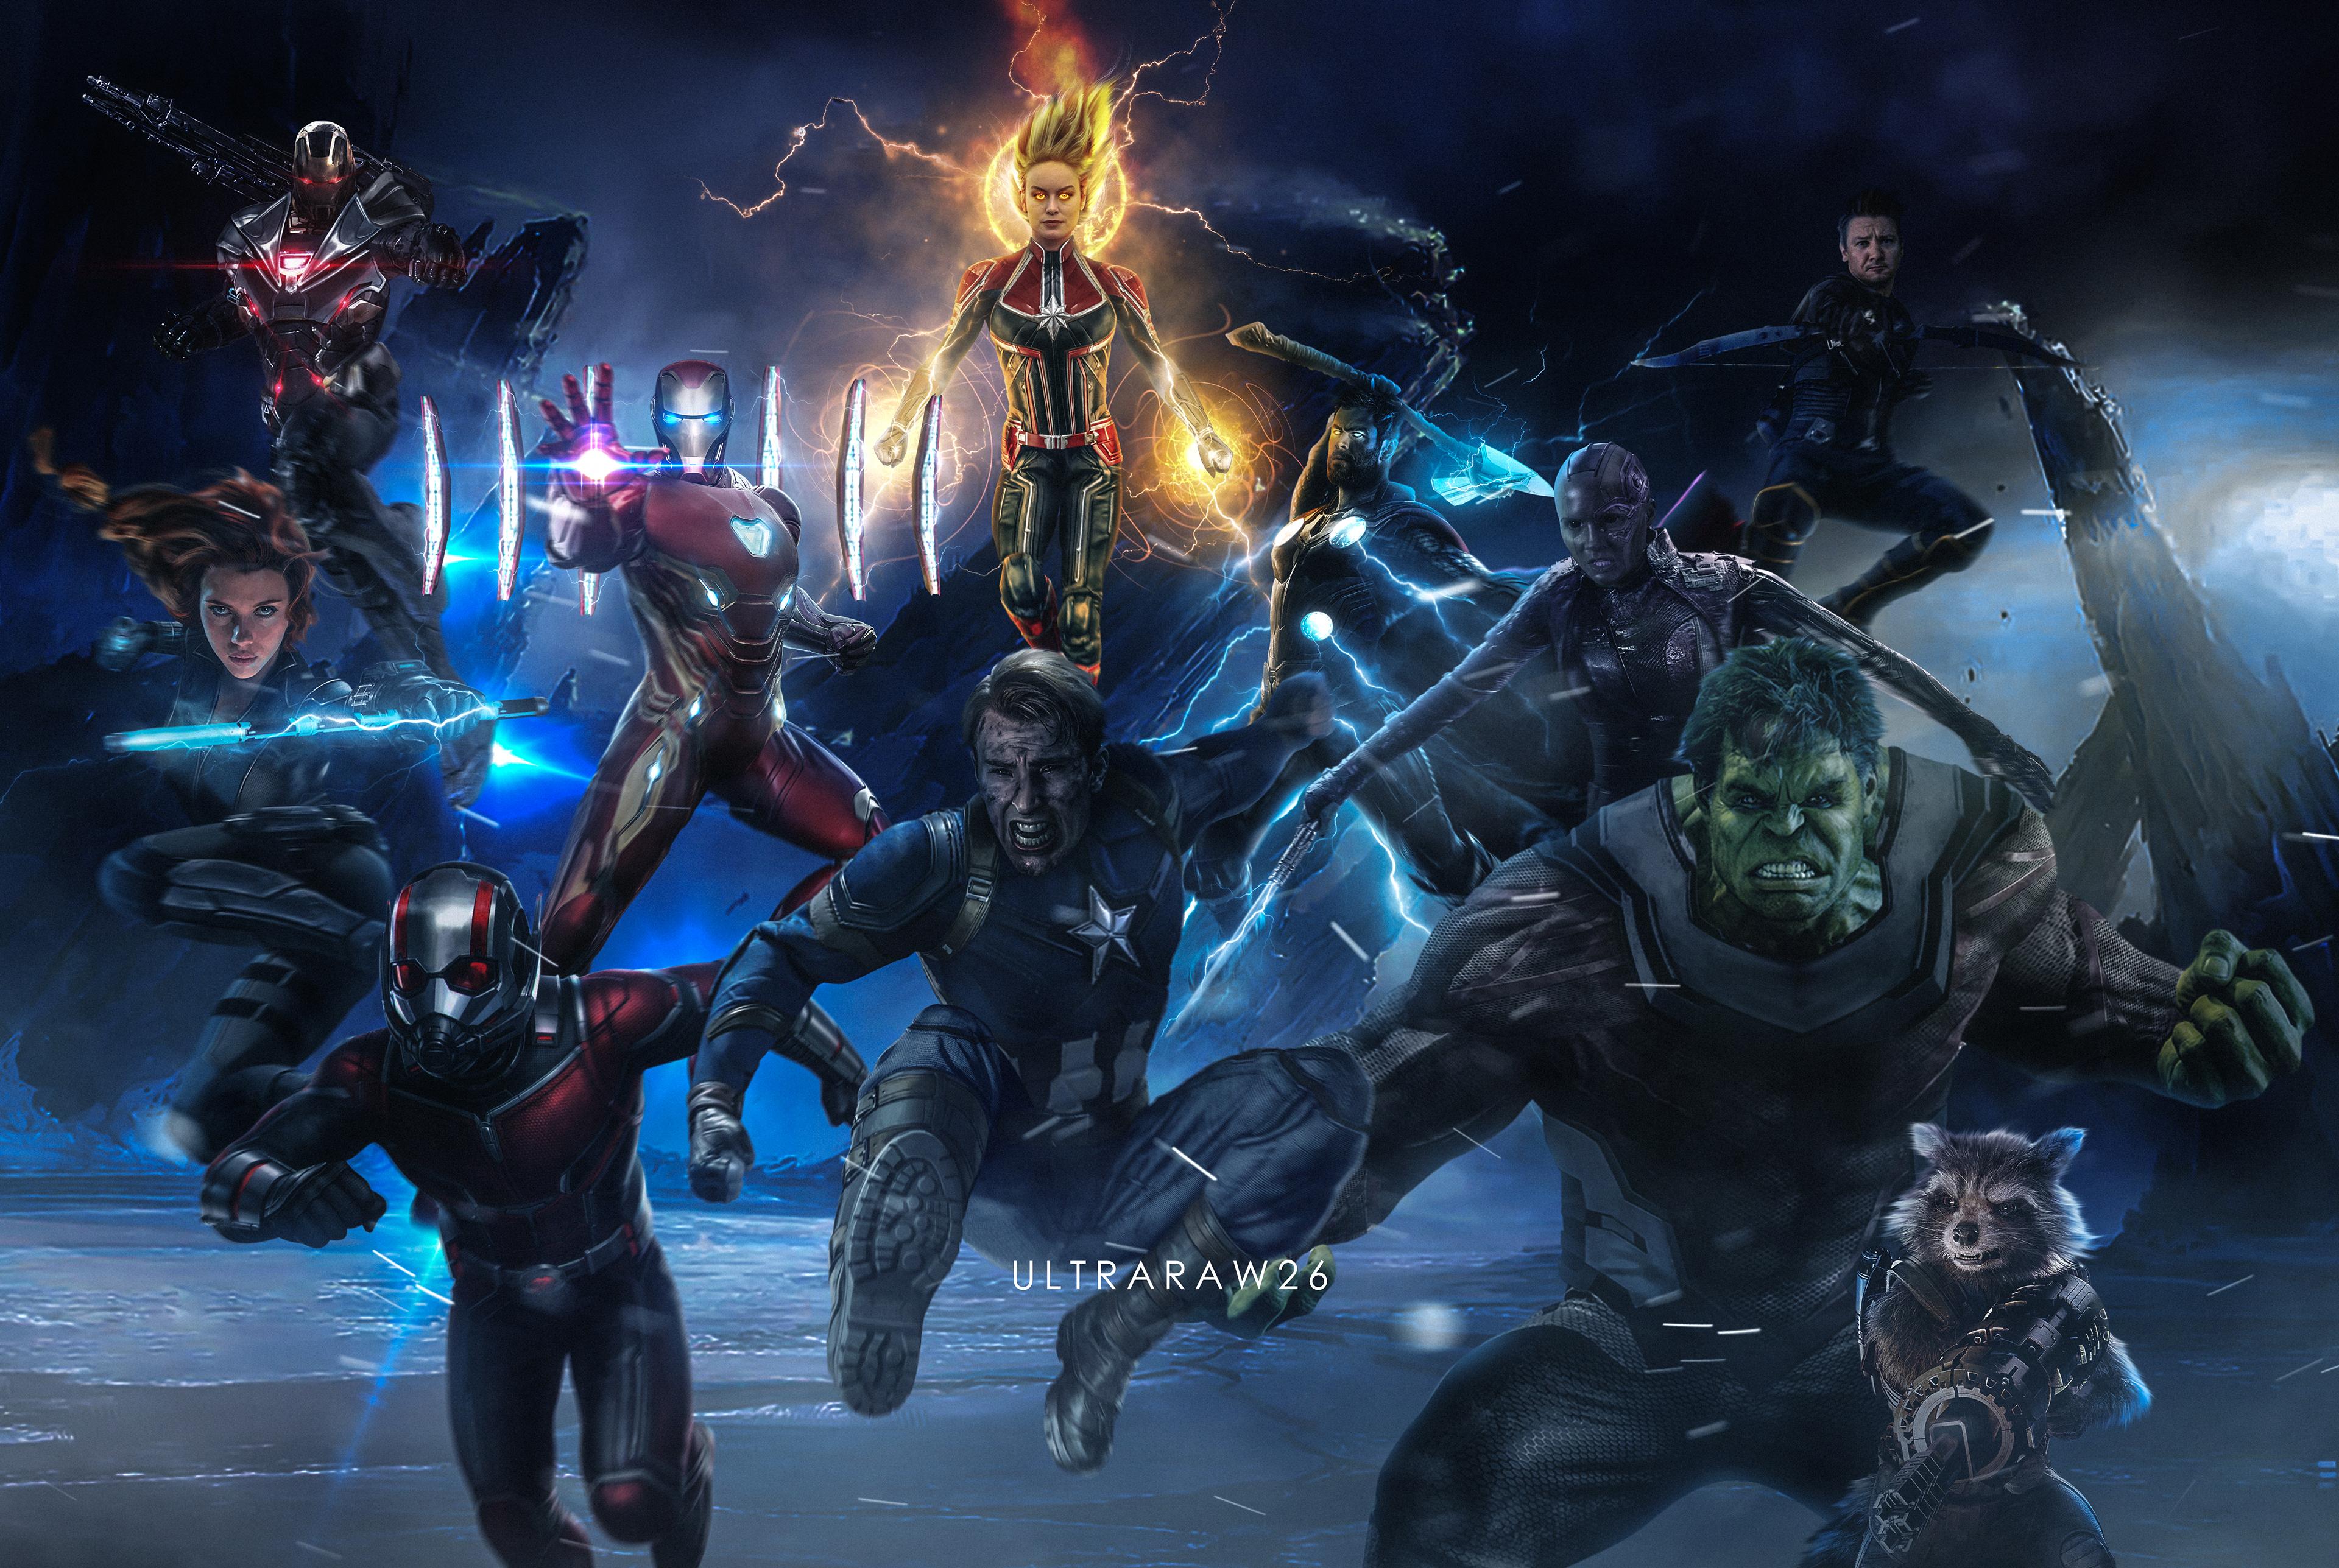 Avengers EndGame, Iron Man, Thor, Hulk, Black Widow, War